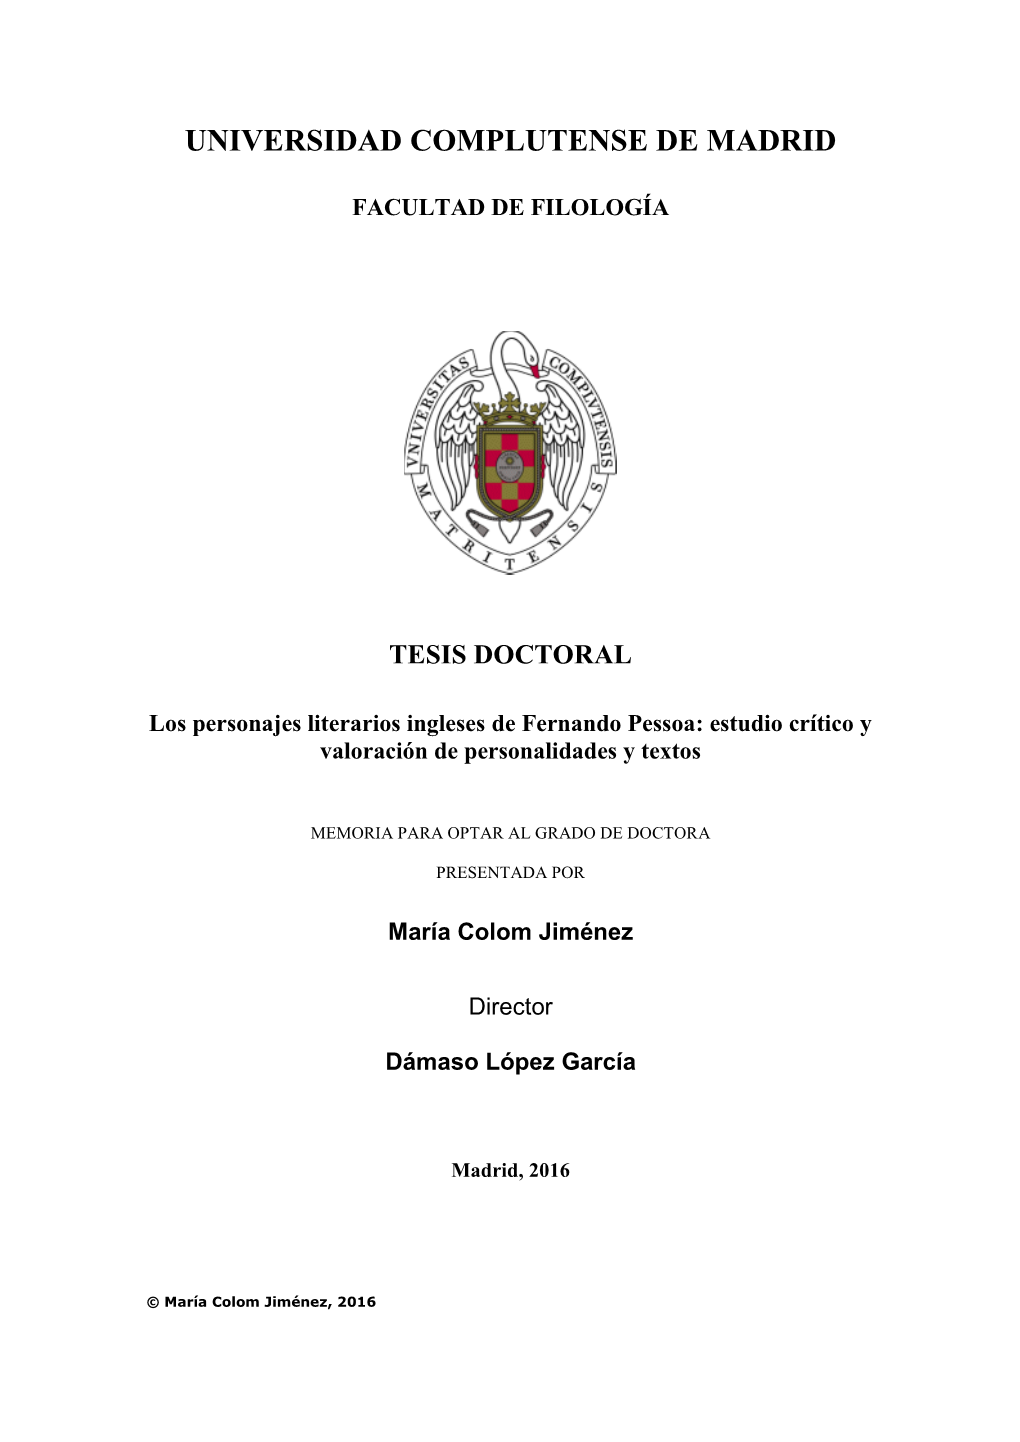 Los Personajes Literarios Ingleses De Fernando Pessoa: Estudio Crítico Y Valoración De Personalidades Y Textos